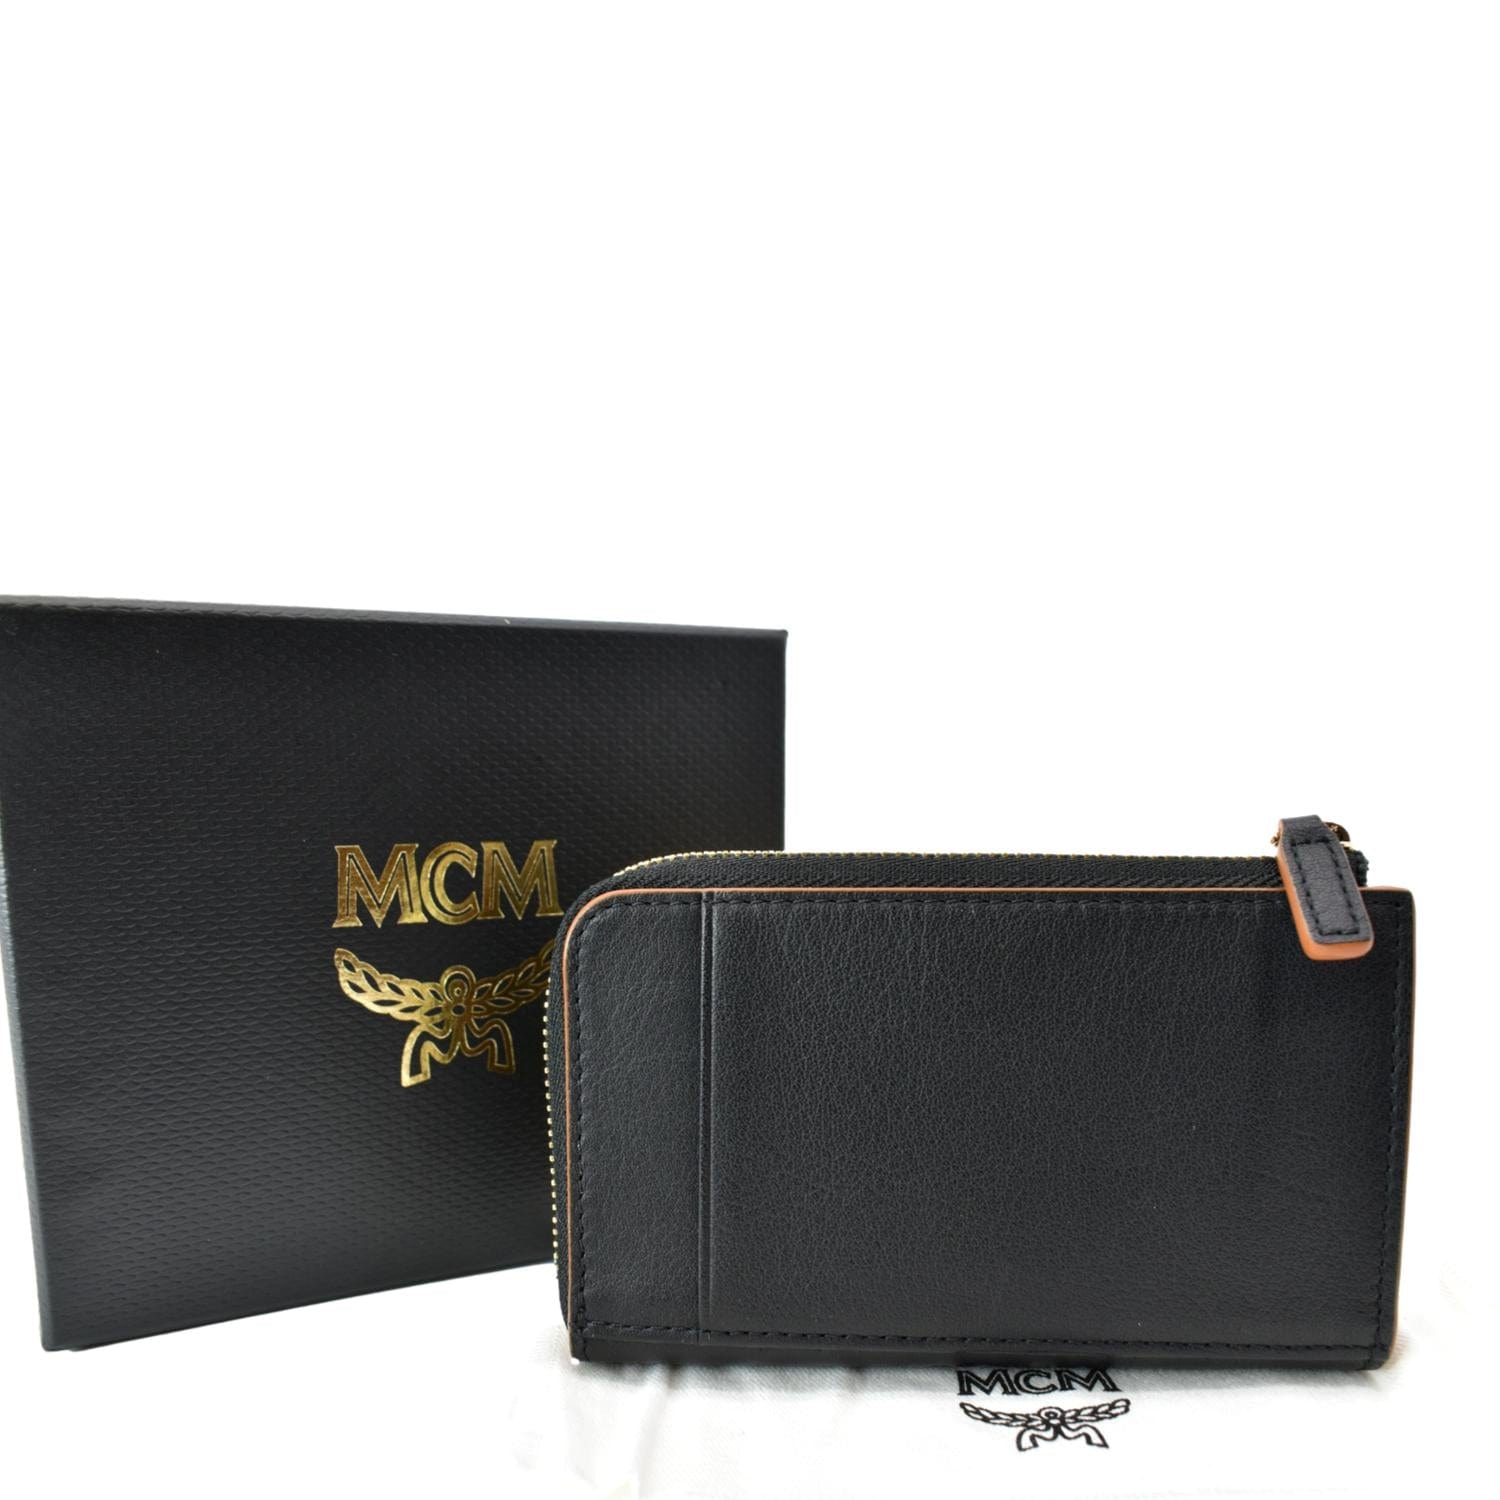 MCM Black Medium Bag & MCM Wallet Review 